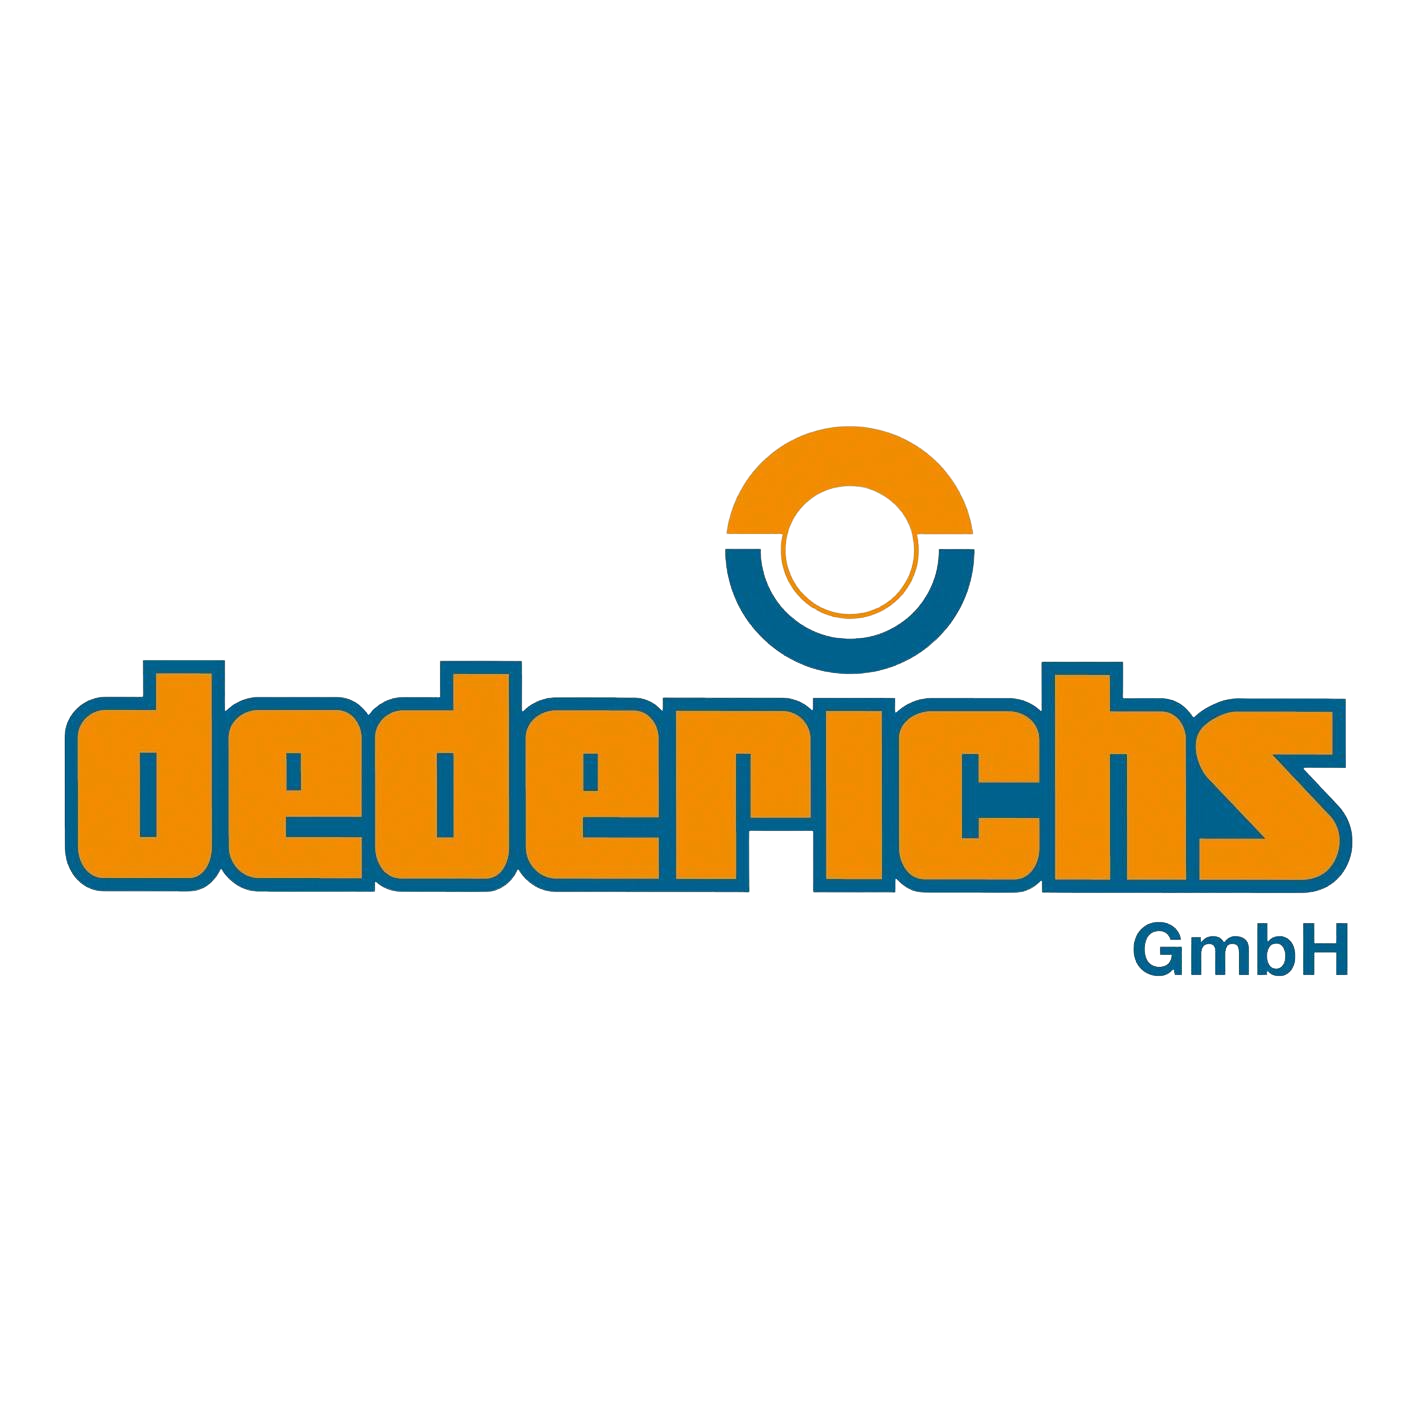 Dederichs